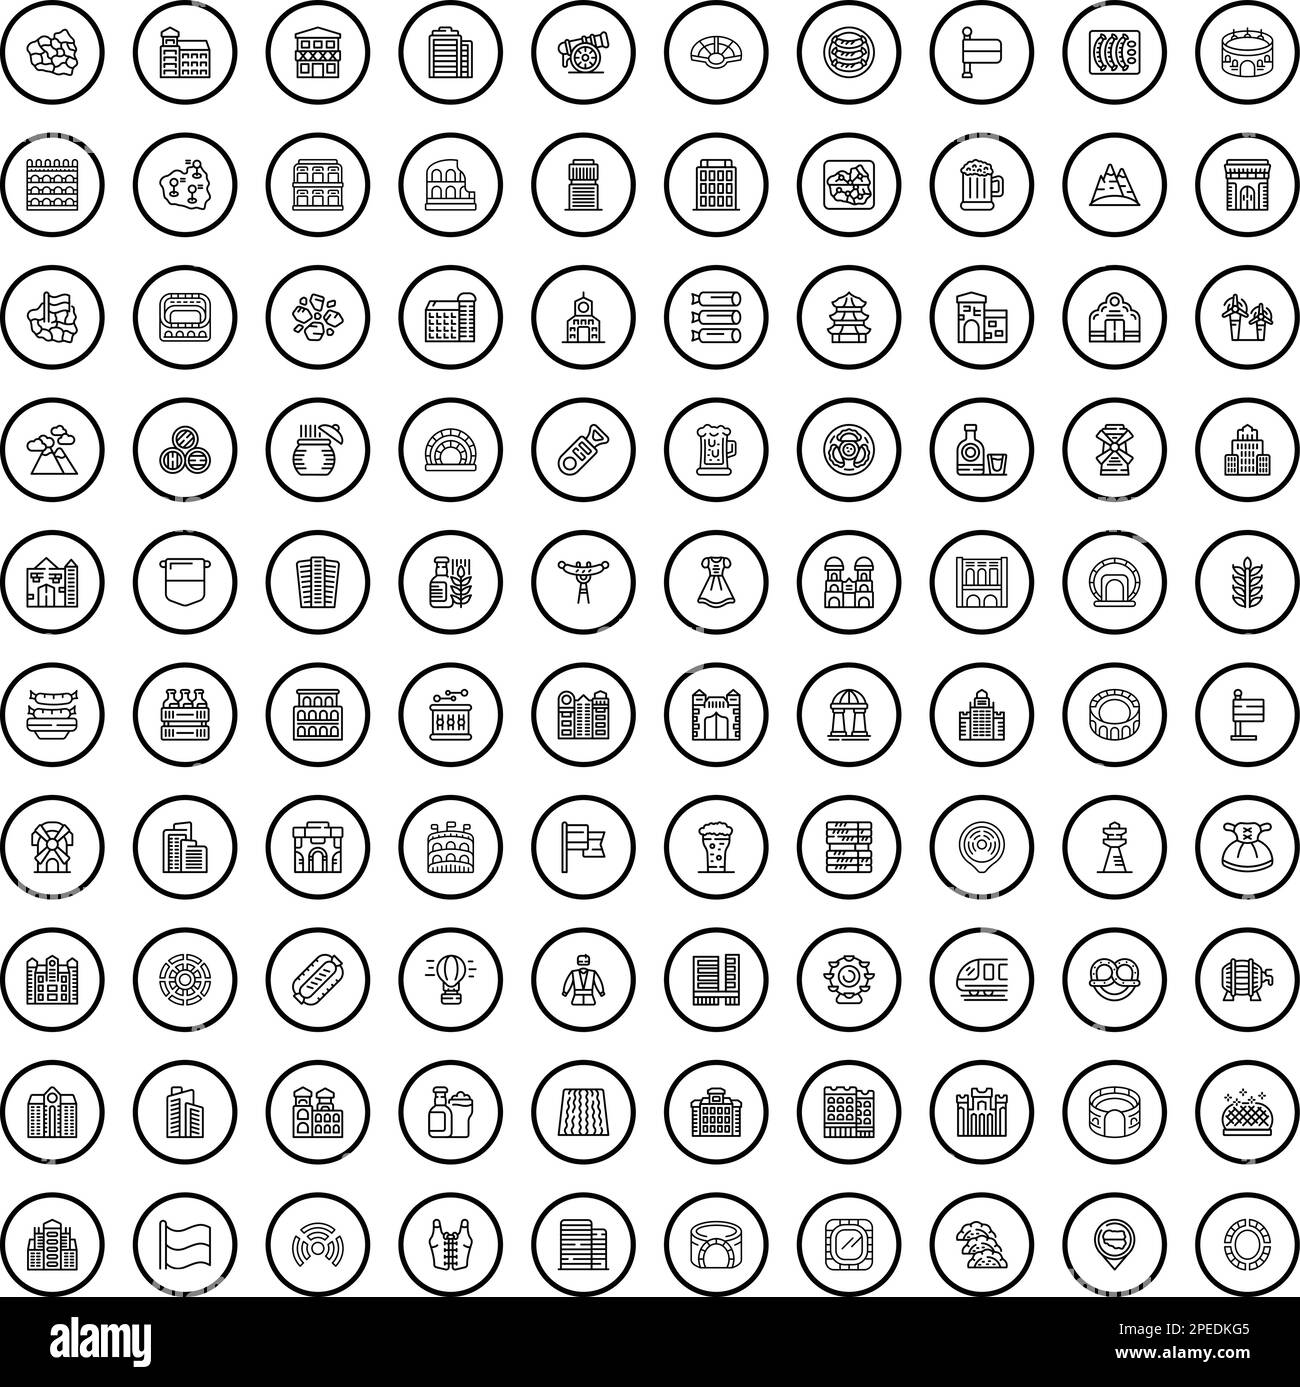 ensemble de 100 icônes pour l'europe. Schéma illustration de 100 icônes europe ensemble de vecteurs isolé sur fond blanc Illustration de Vecteur